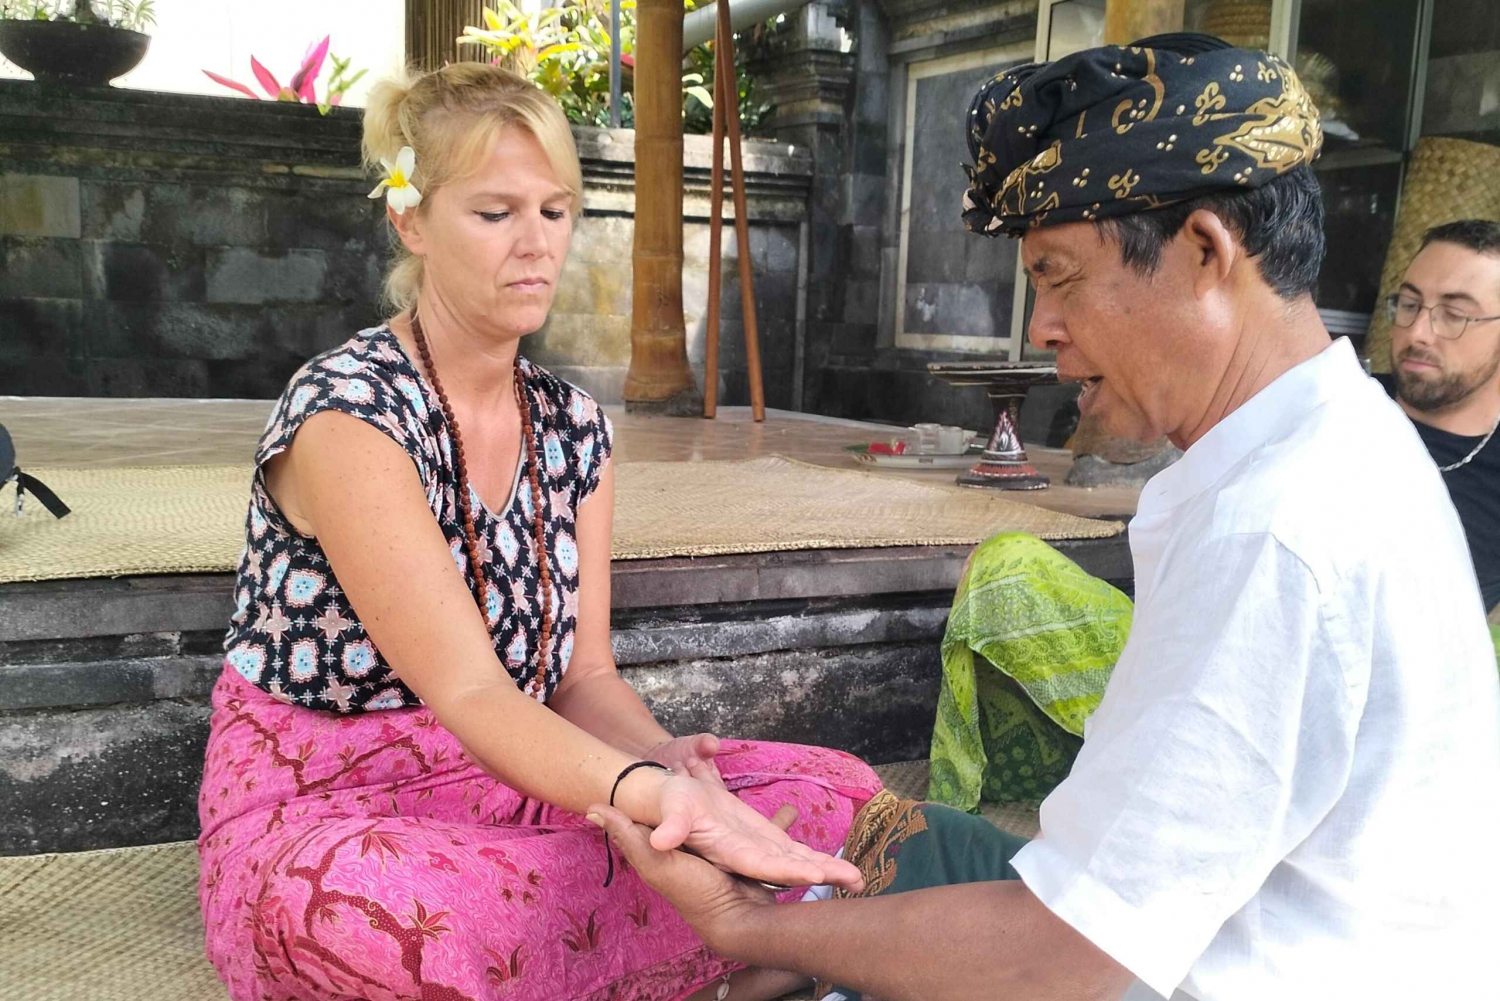 Balijski rytuał oczyszczający i wizyta u lokalnego uzdrowiciela